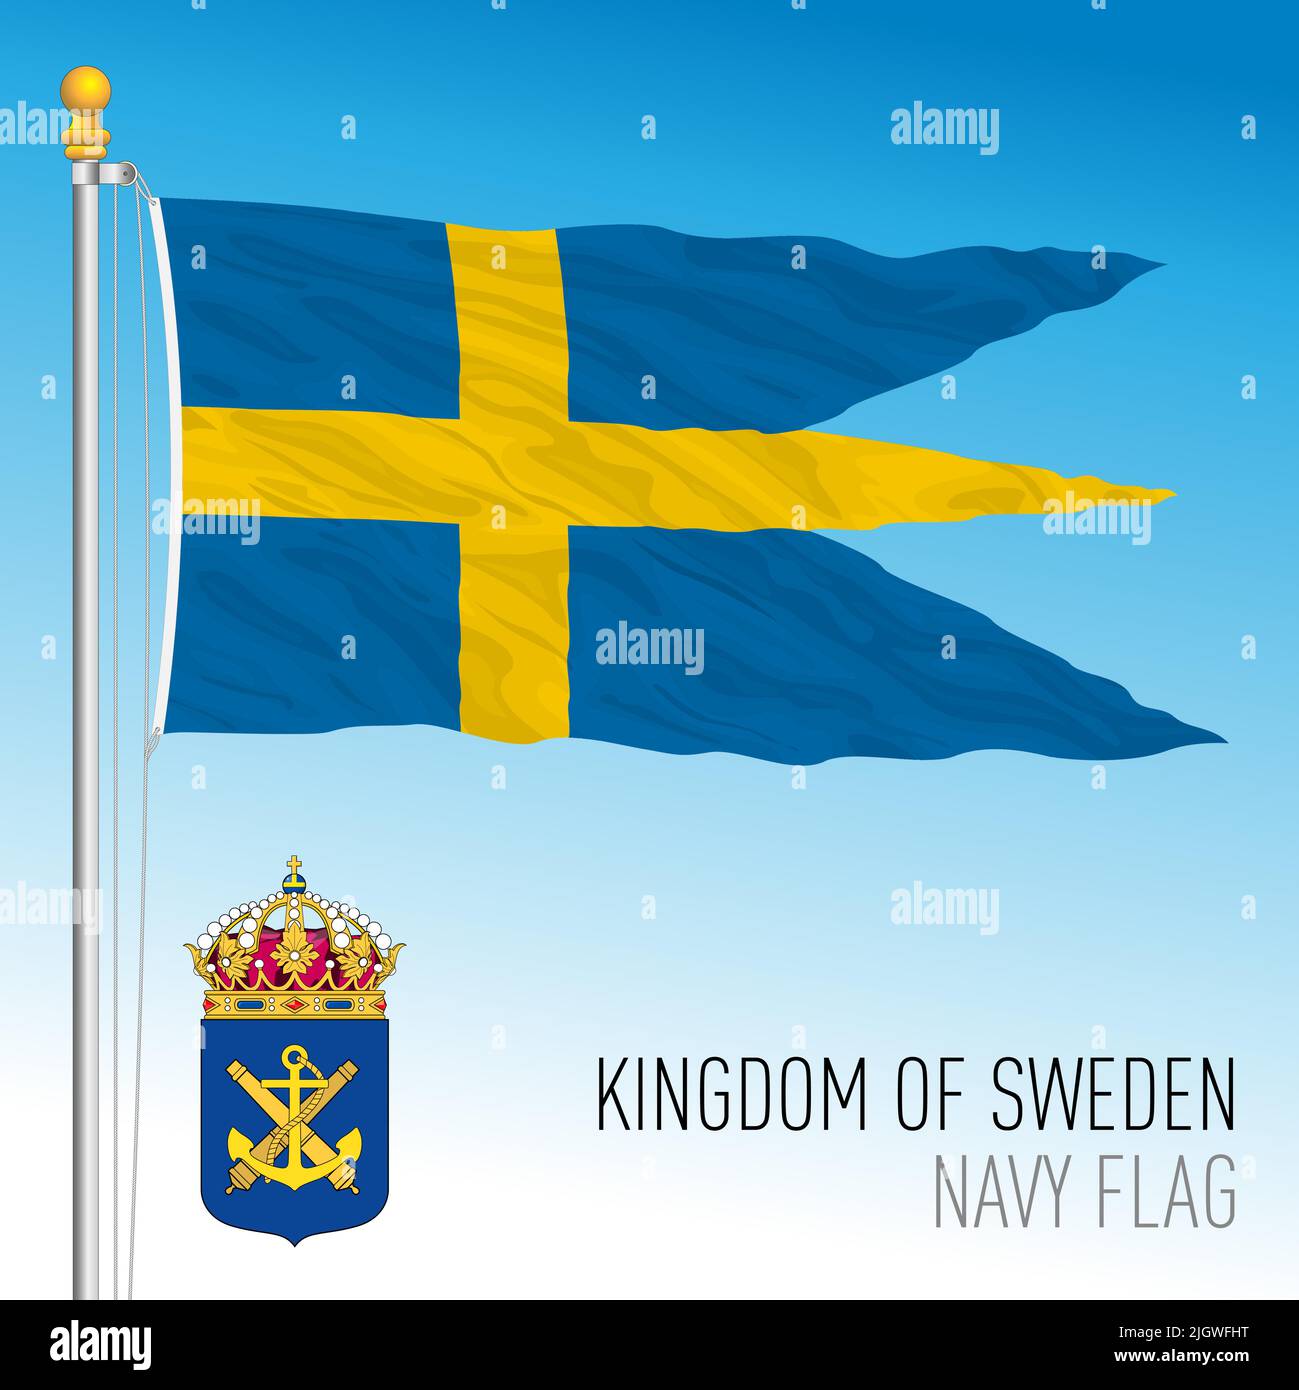 Bandera y escudo de la Armada Sueca, Reino de Suecia, Unión Europea, ilustración de vectores Ilustración del Vector